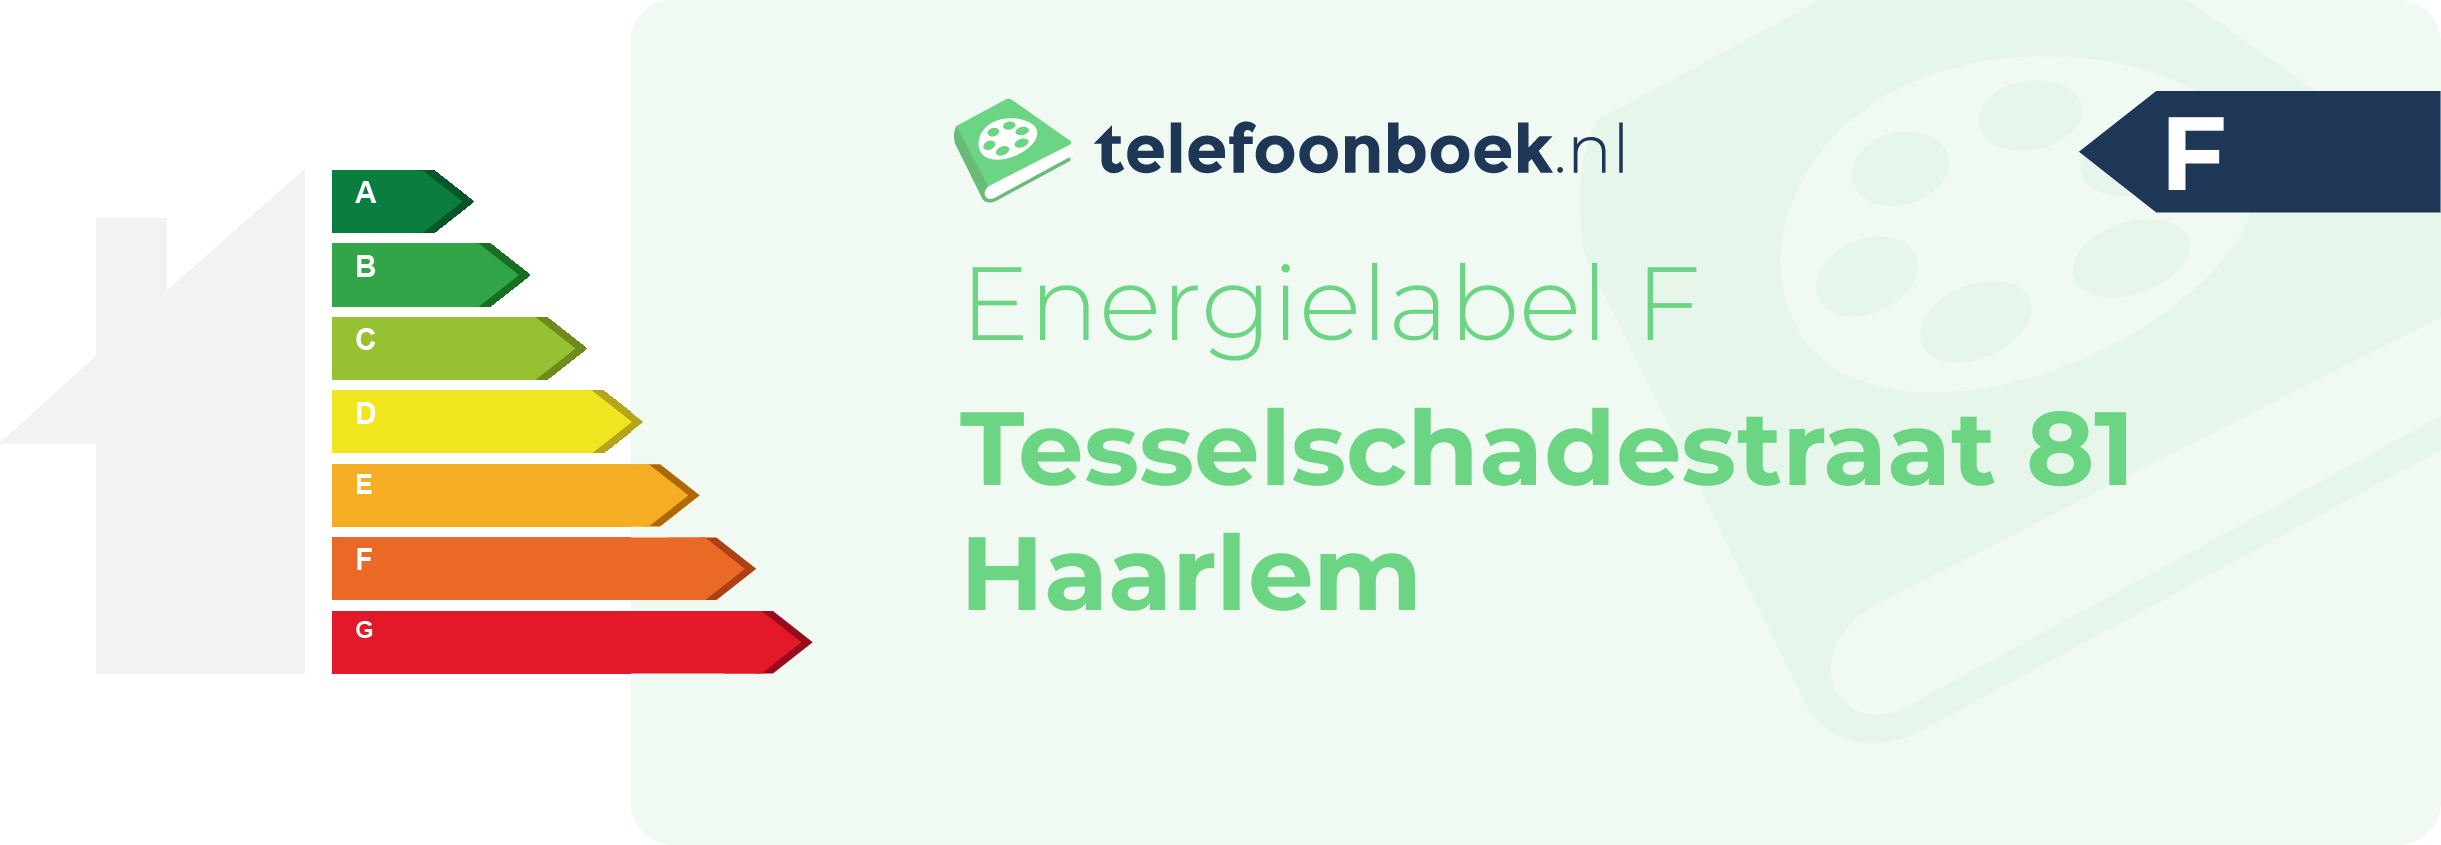 Energielabel Tesselschadestraat 81 Haarlem